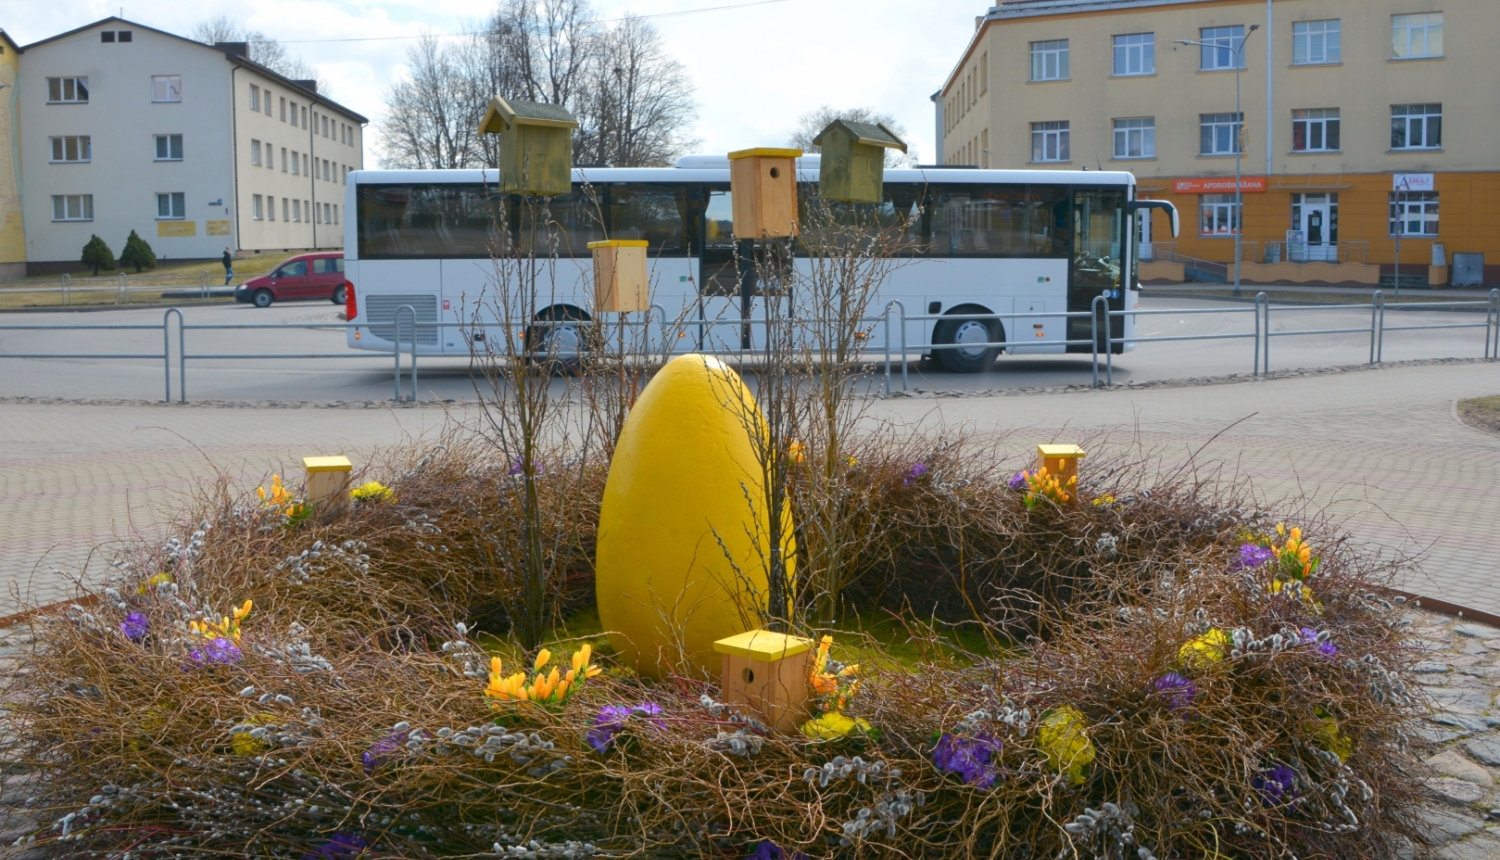 Lieldienu dekorācija - ola grozā priekšplānā un autobuss fonā